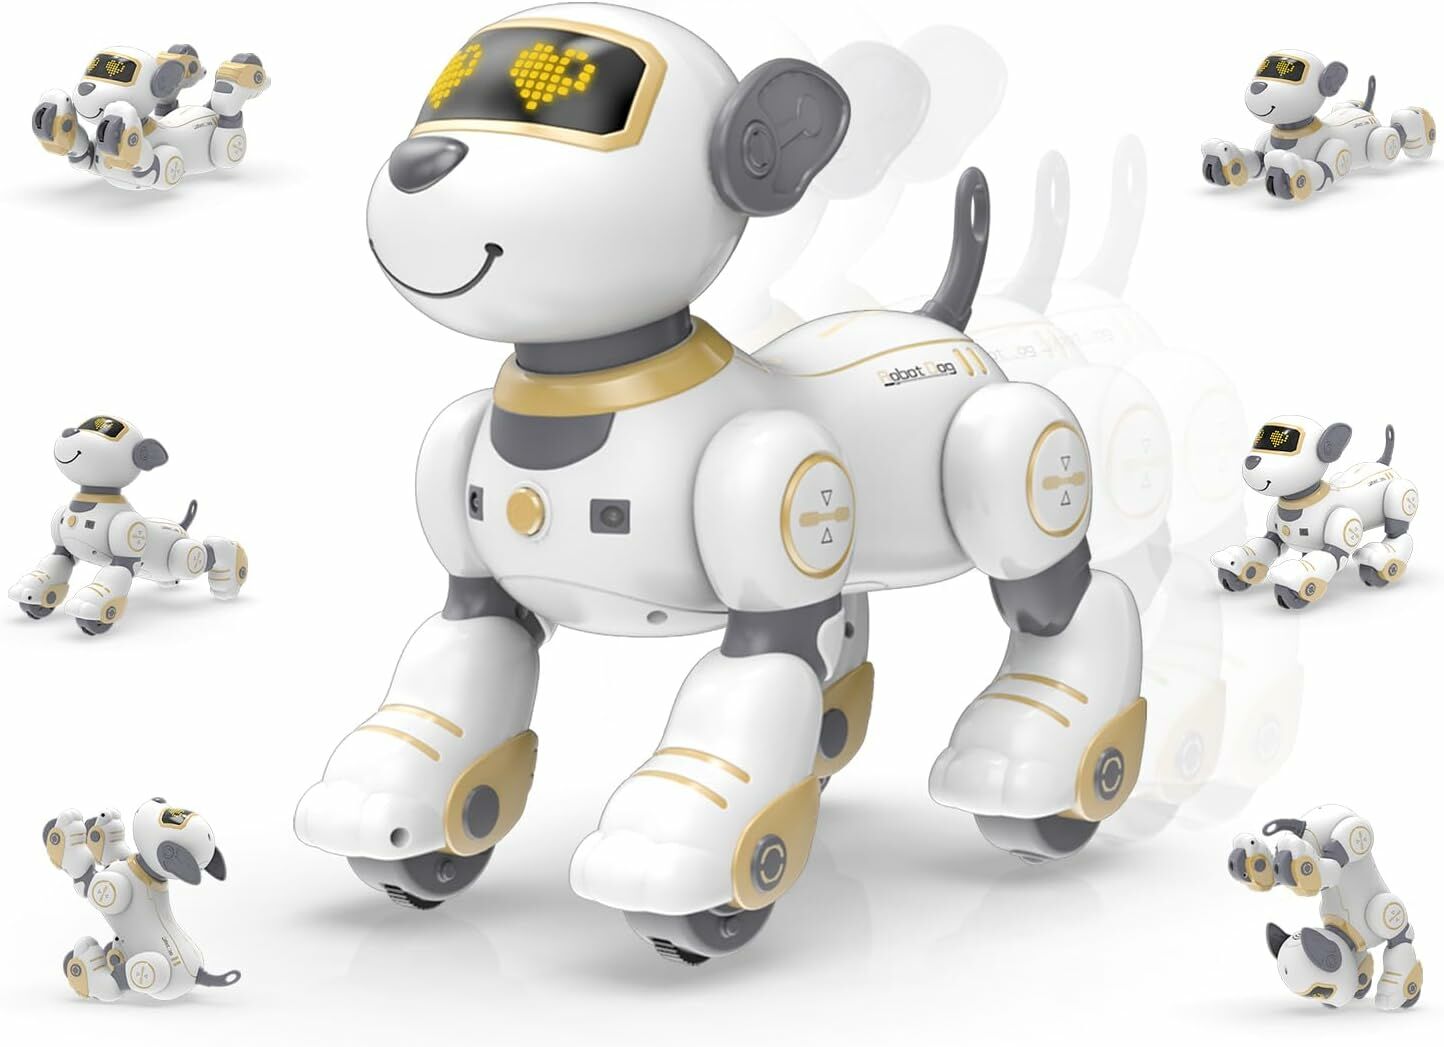 STEMTRON Programlanabilir Uzaktan Kumandalı Robot Köpek - Altın